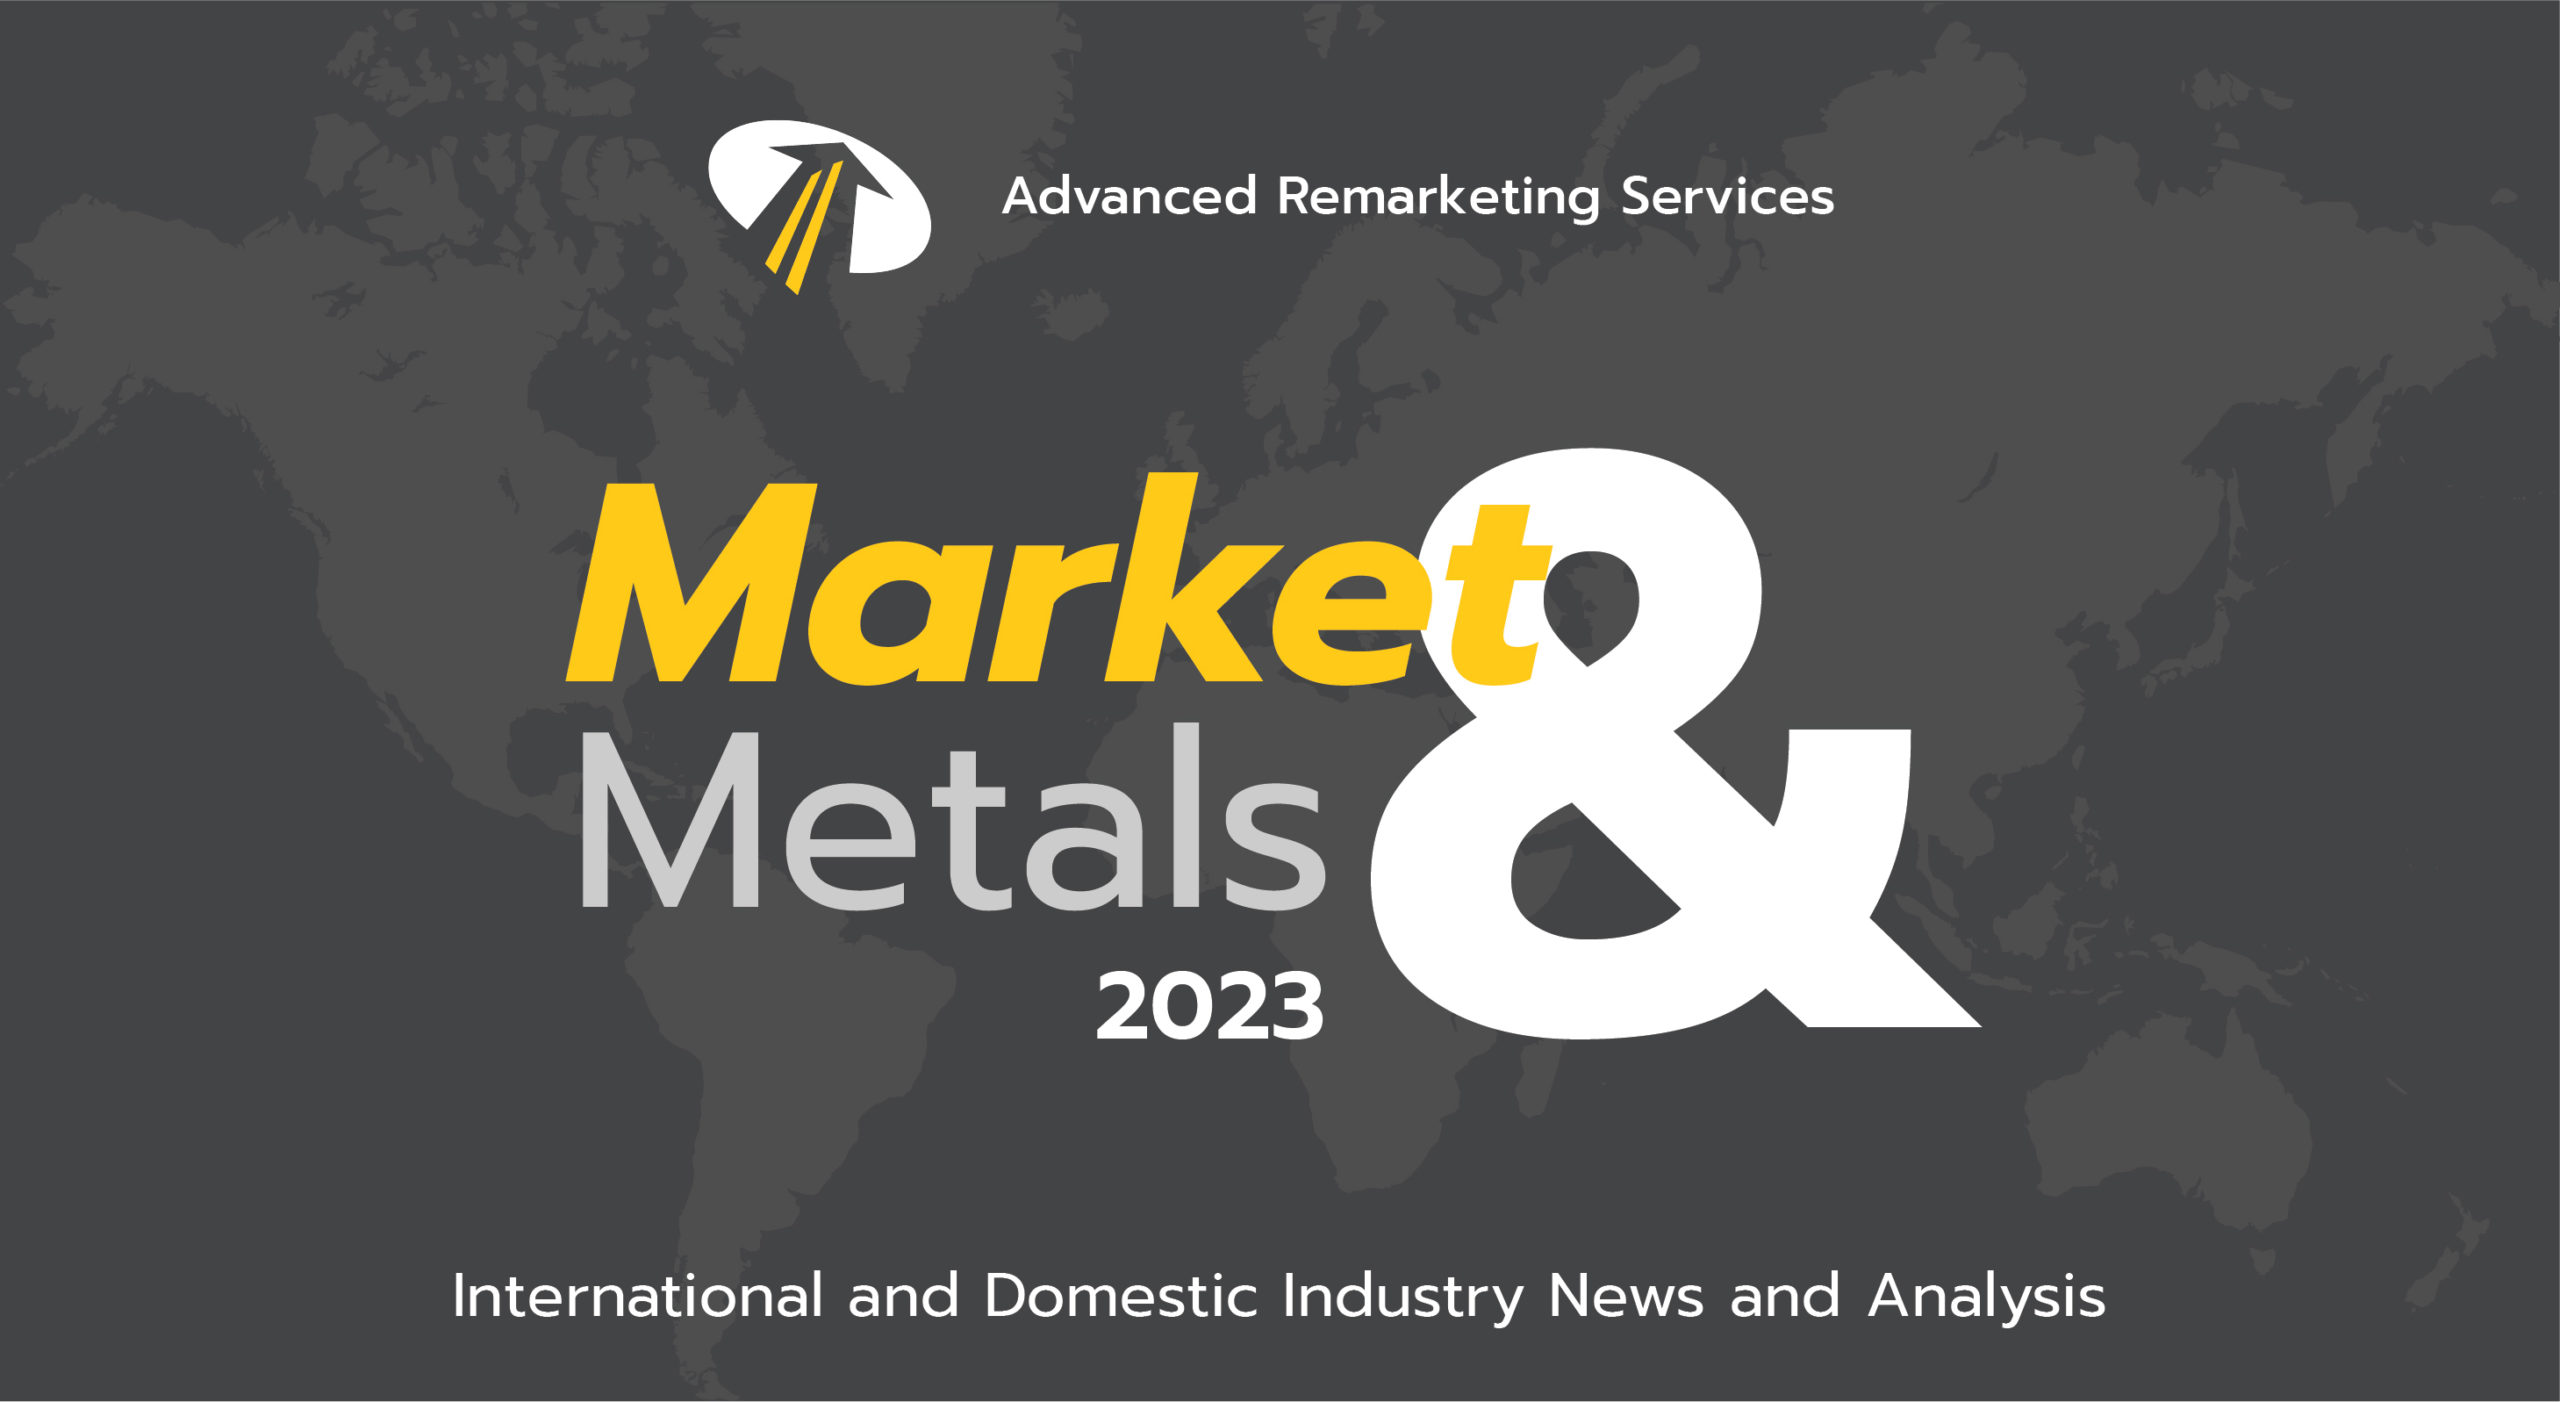 Market and Metals 2023